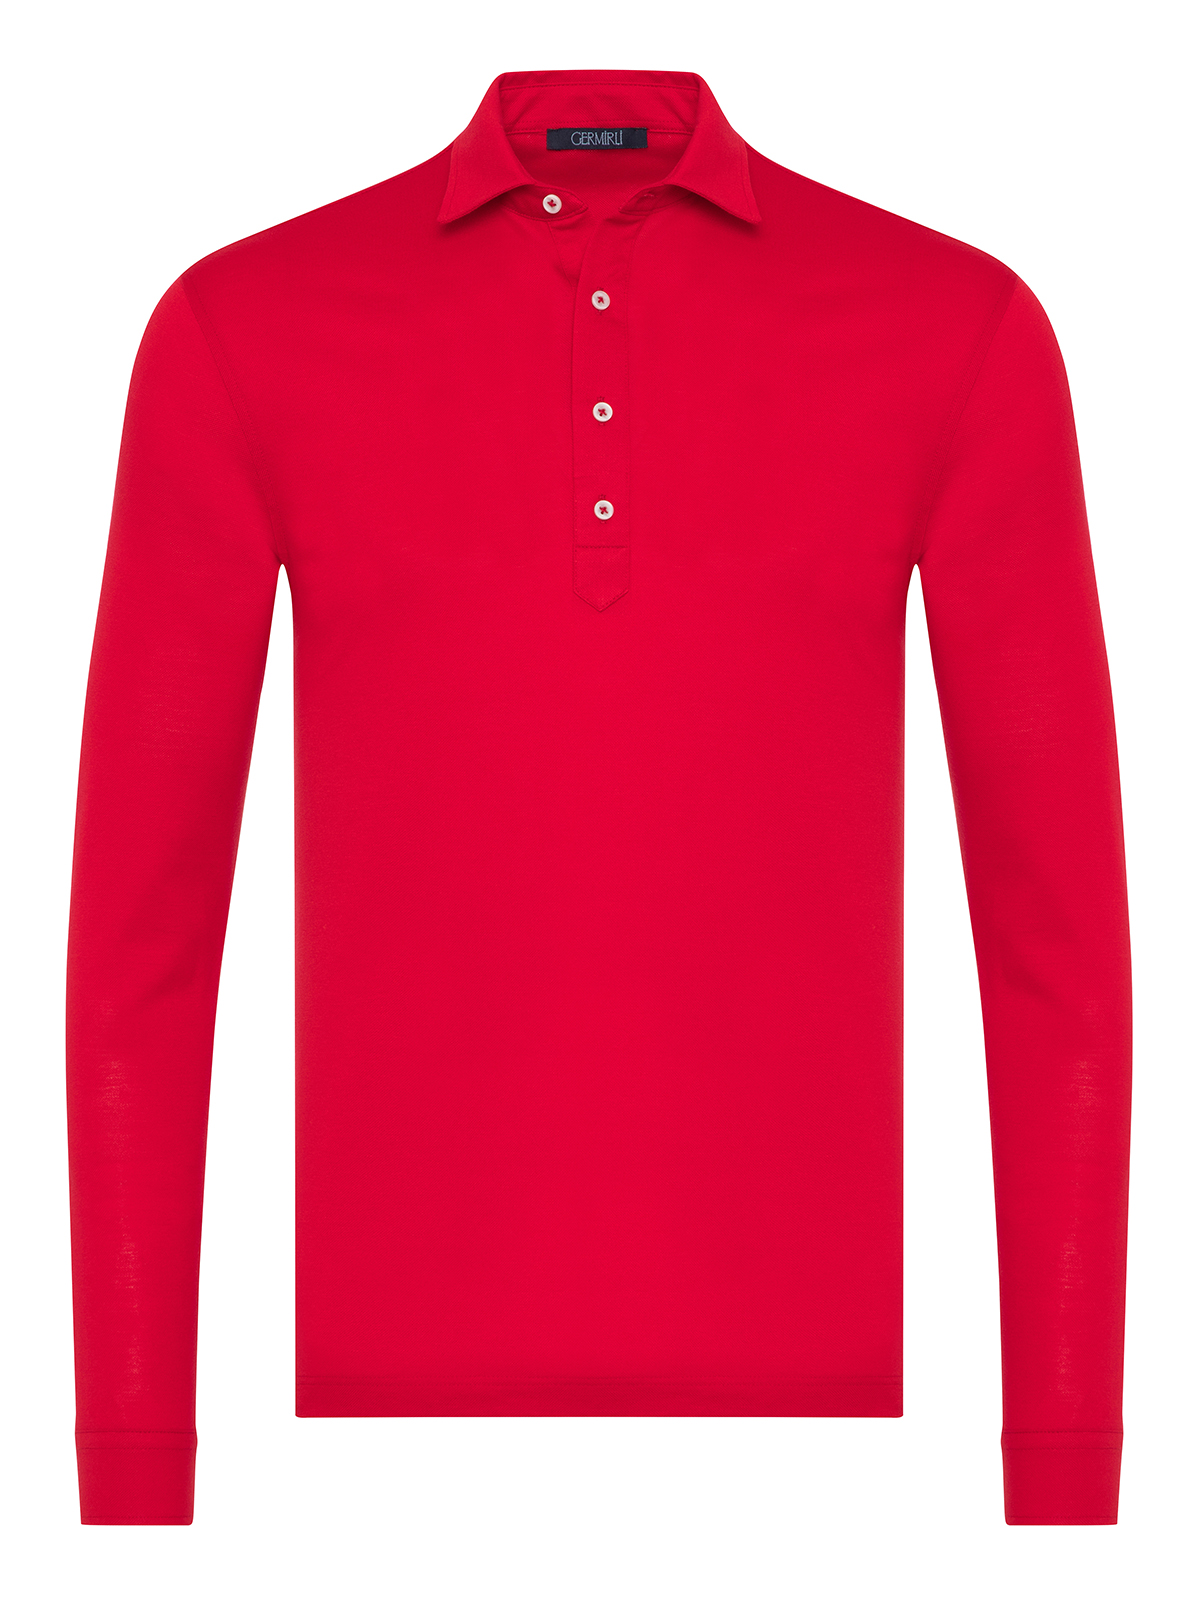 Germirli - Germirli Kırmızı Piquet Gömlek Yaka Regular Fit Merserize Uzun Kollu Tişört